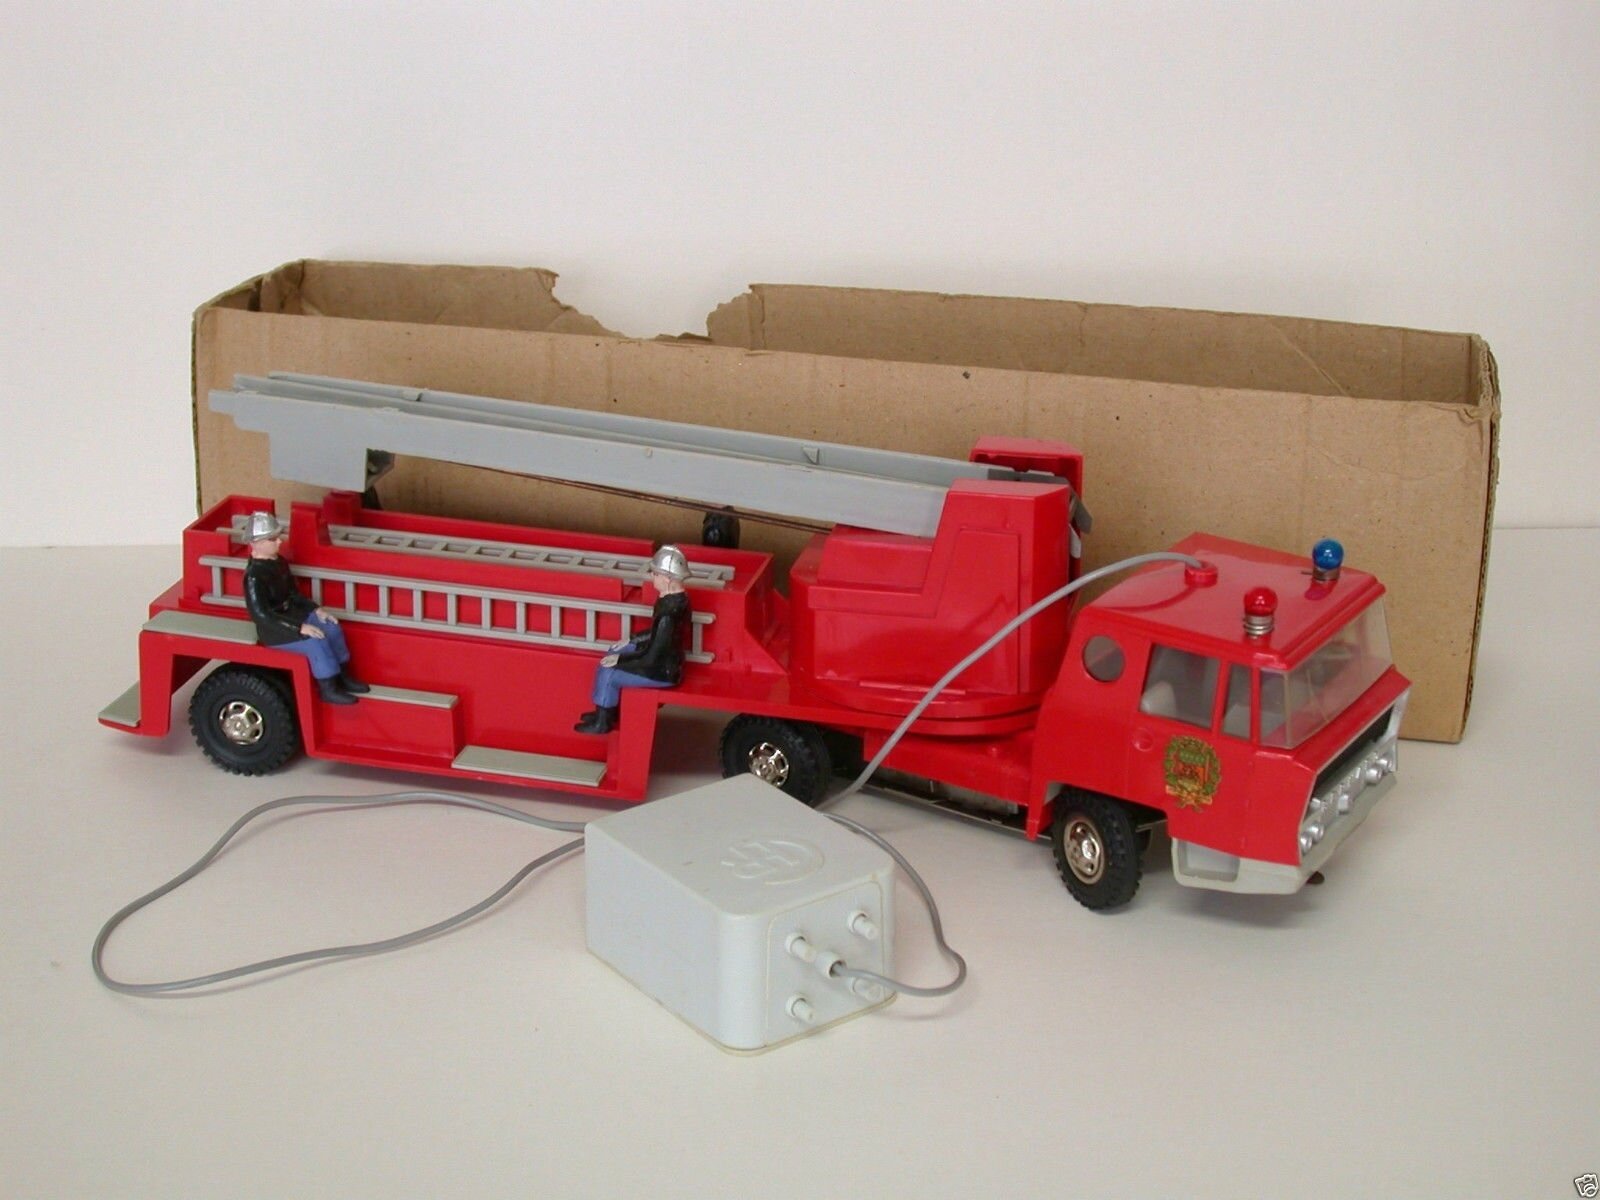 Gros camion de pompier filoguidé | Beebs